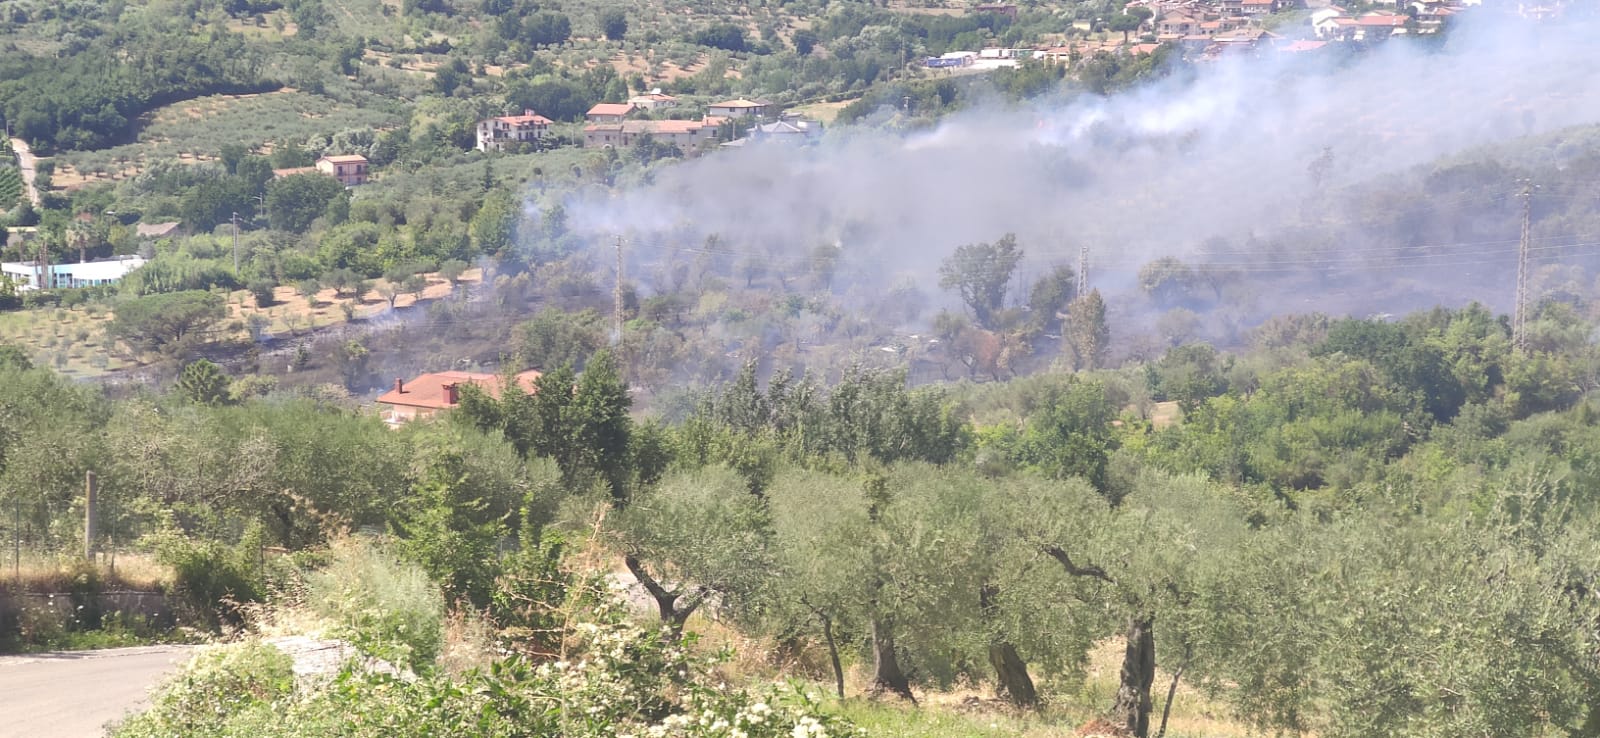 Emergenza incendi nel Sannio: da fine giugno oltre 200 interventi